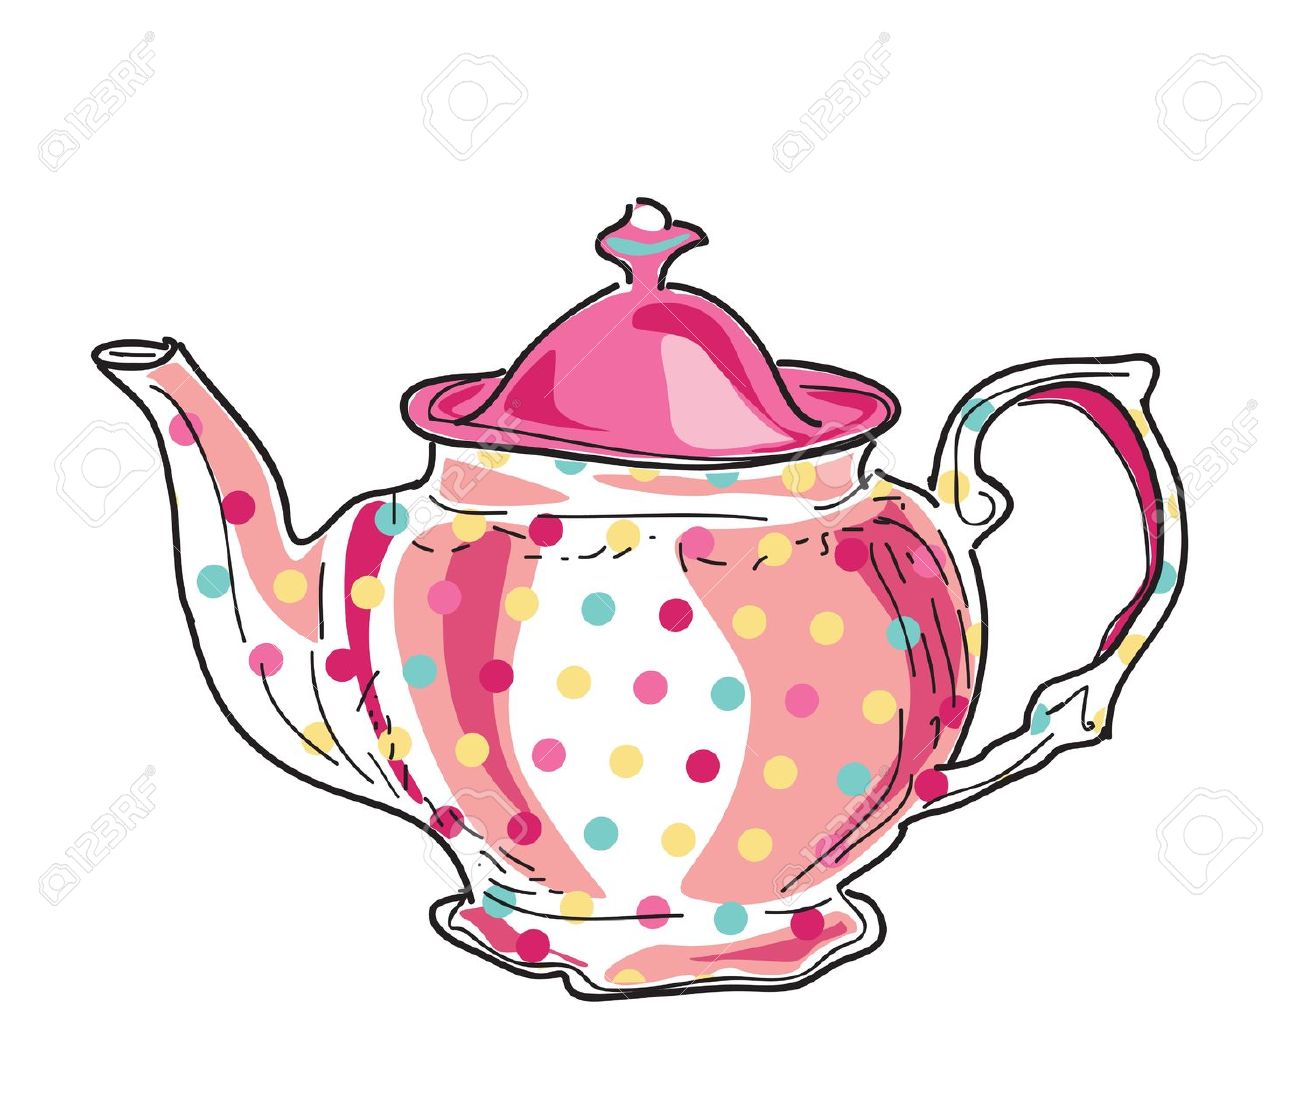 tea cup clip art vector free download - photo #18